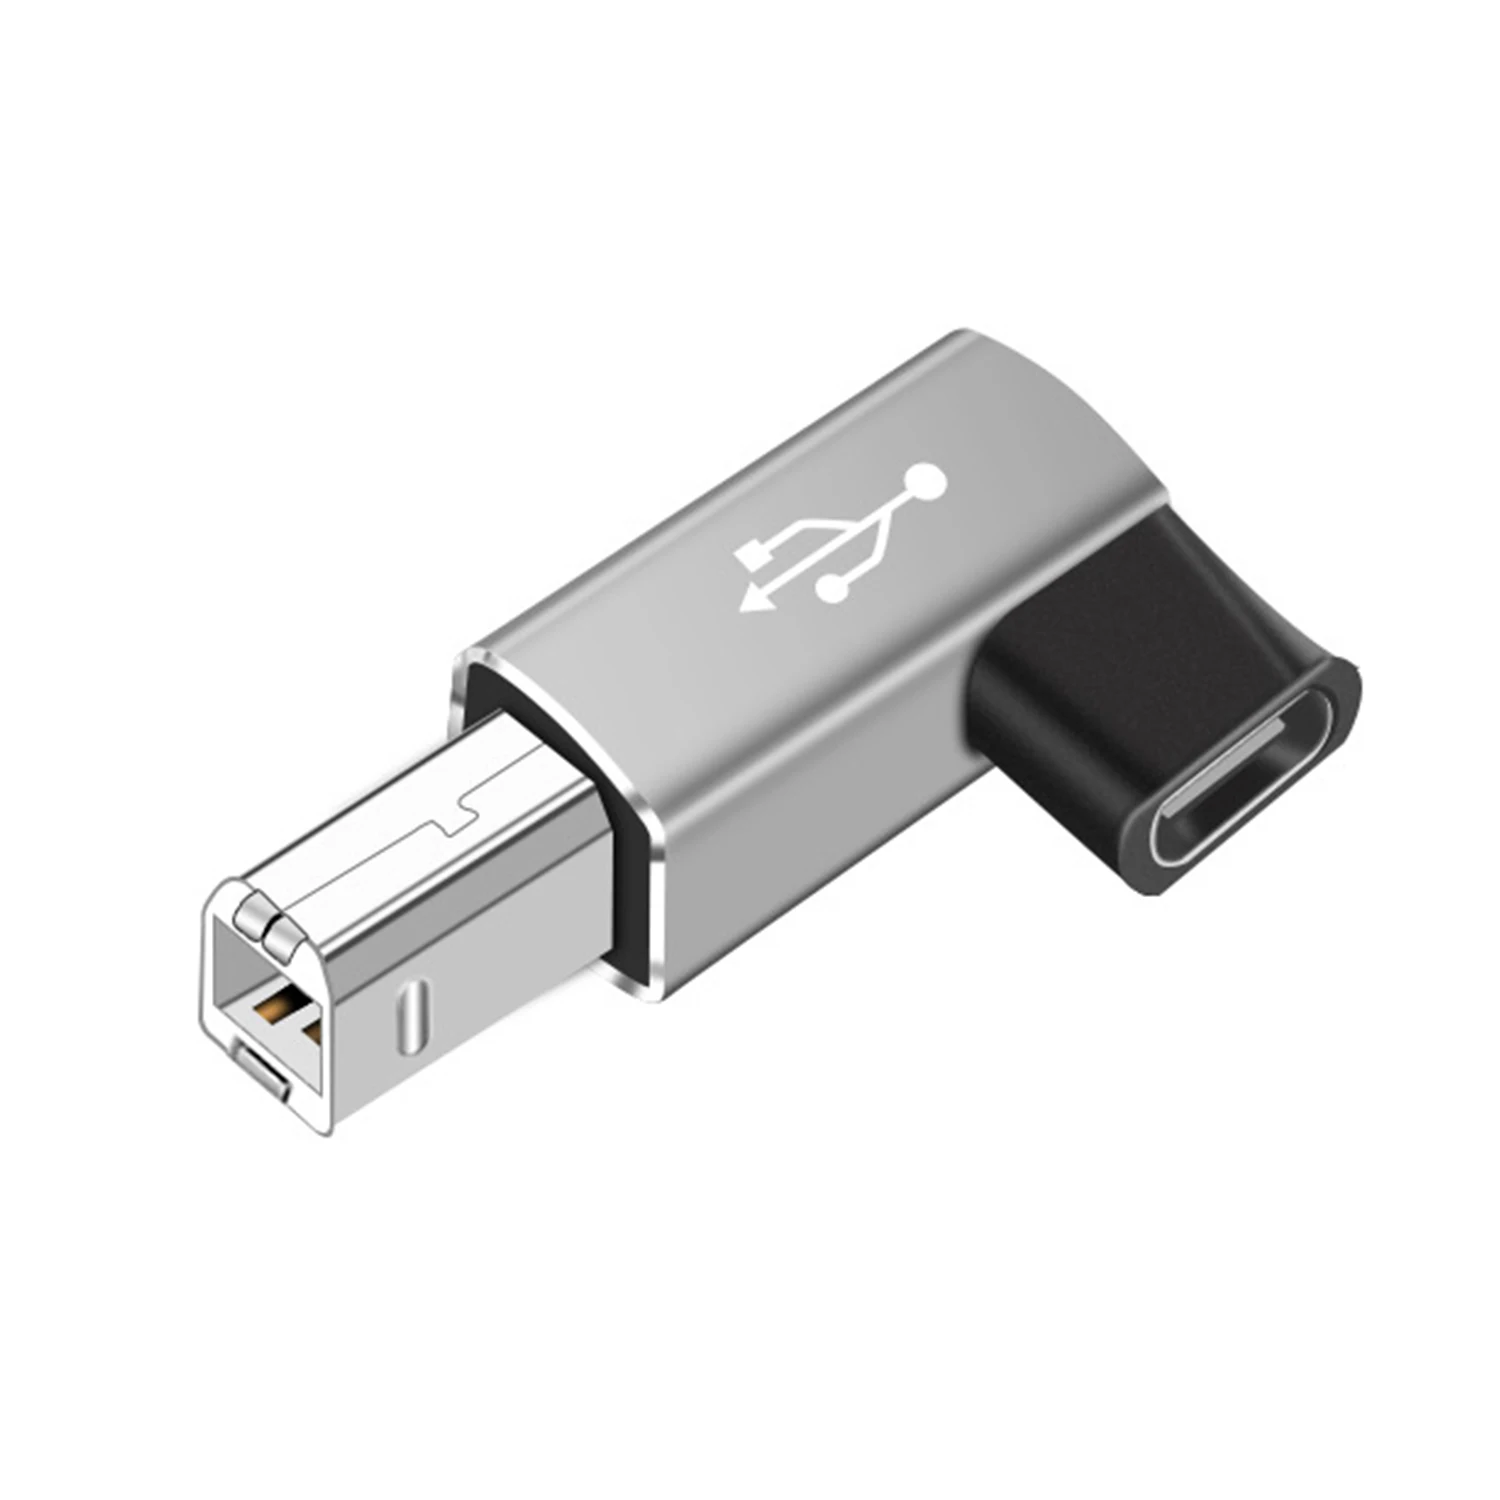 Nephy - Adaptador USB C hembra a MIDI, adaptador USB C a USB B, Compatible con impresoras, sintetizadores de Pianos eléctricos MIDI y más dispositivos